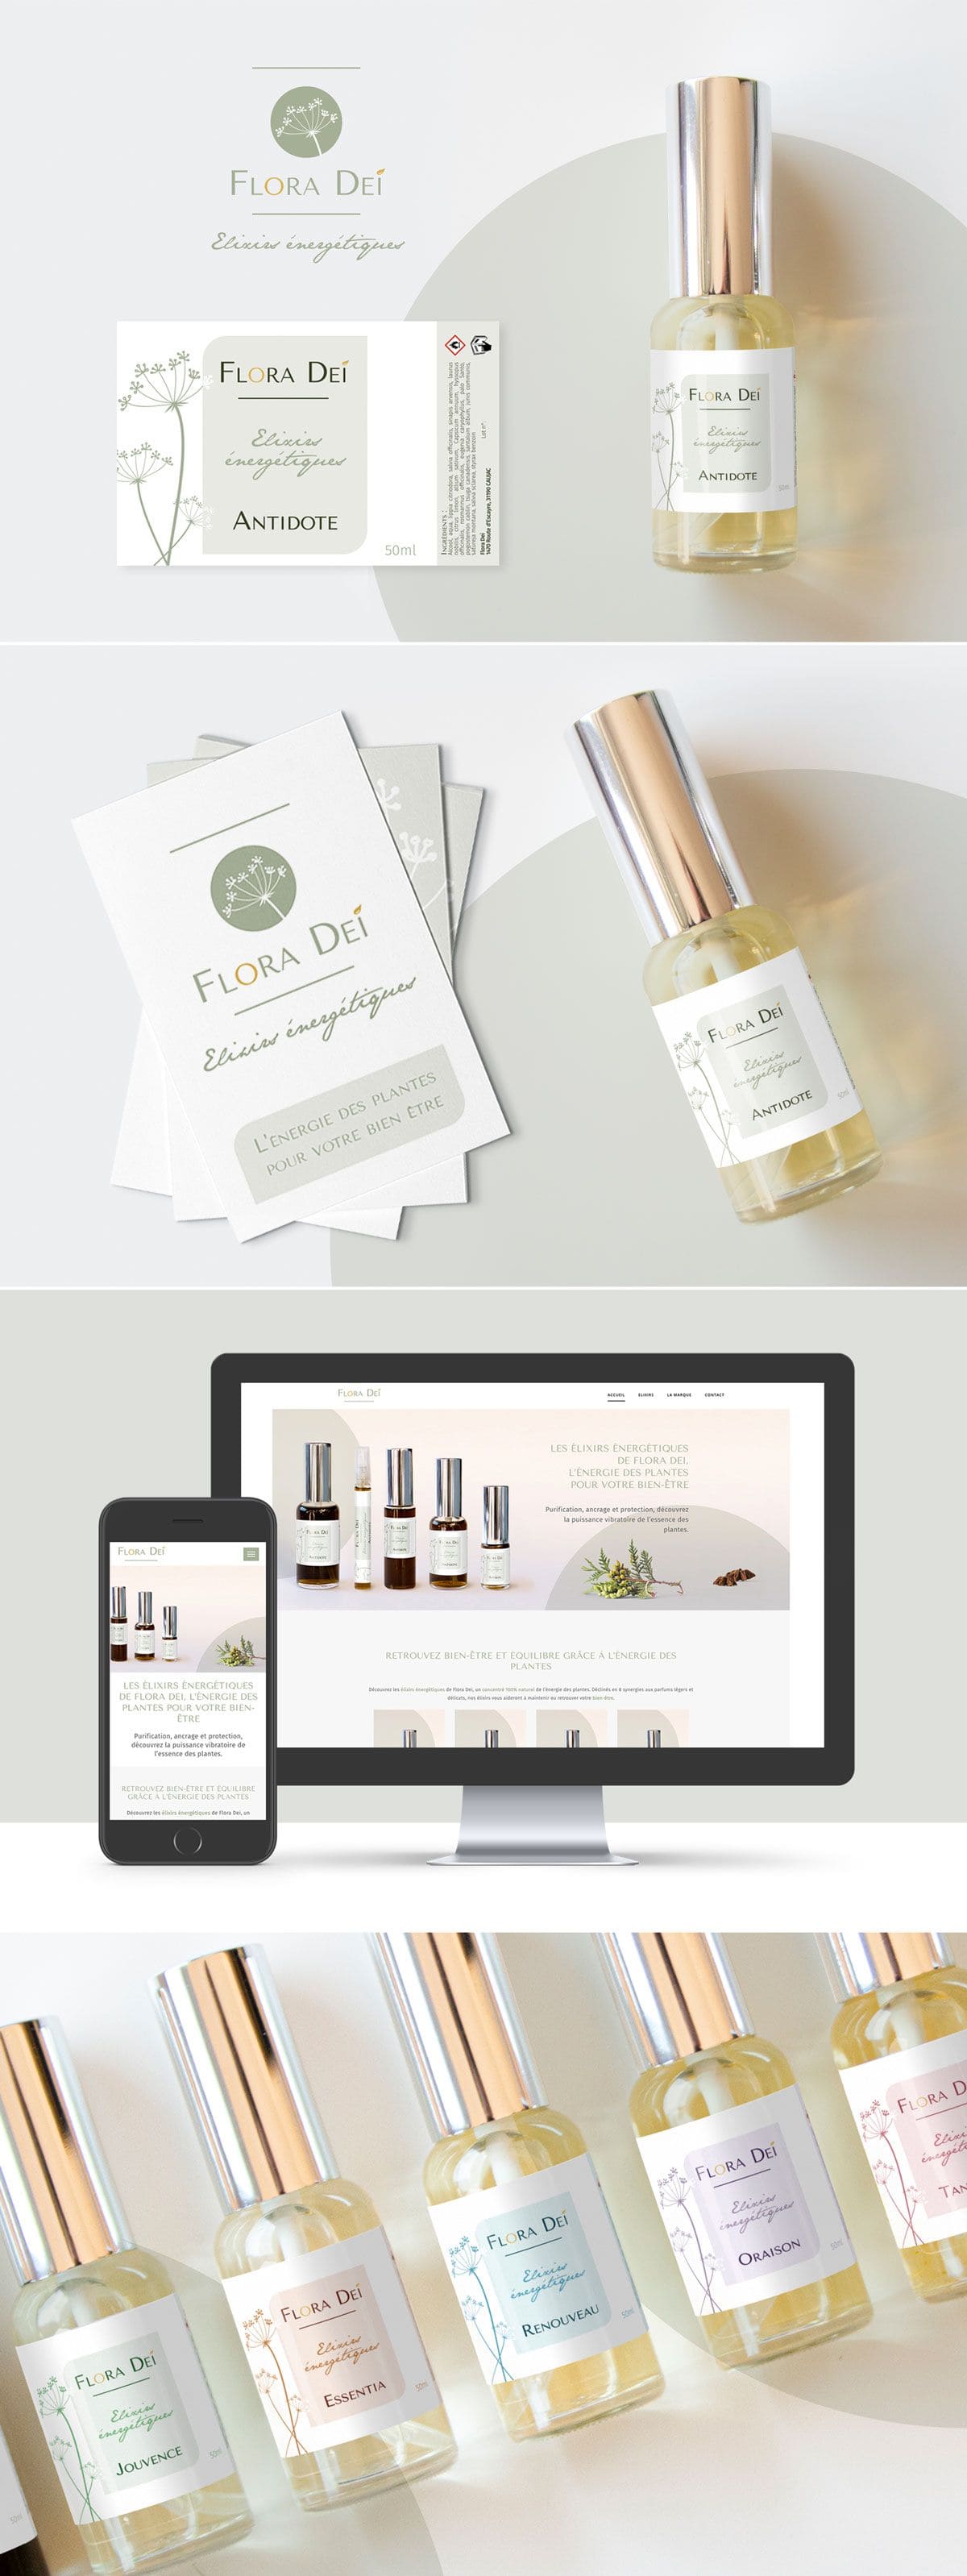 Images de l'identité visuelle de Flora Dei, avec son logo, son site internet responsive design, les étiquettes du packaging de ses flacons, son kakémono